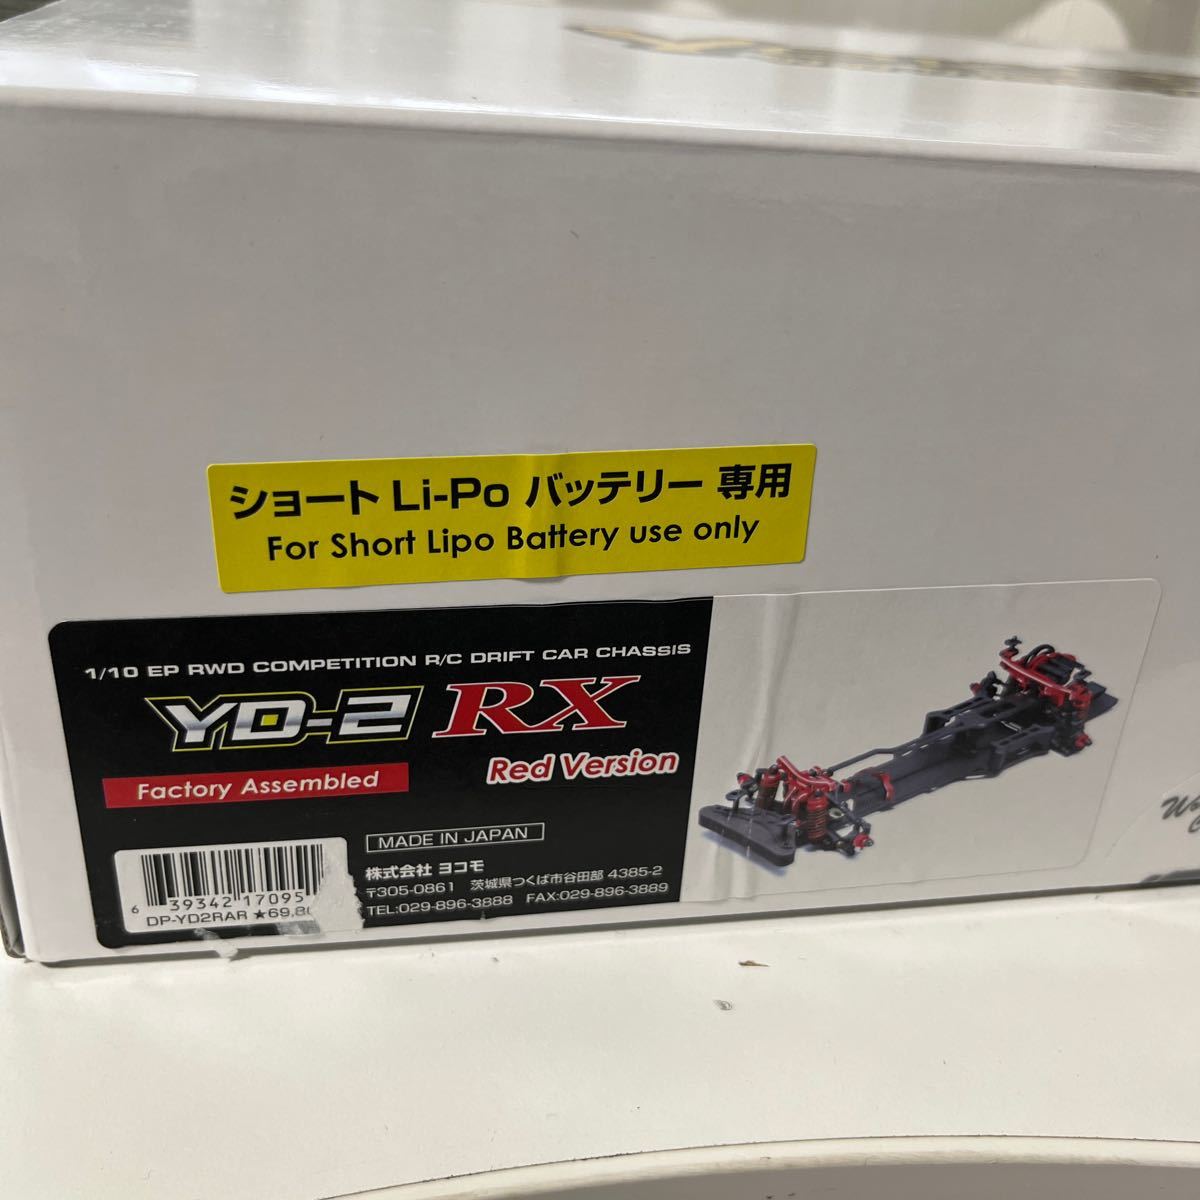 ヨコモ ドリフトカー YOKOMO YD-2RX レッド 工場組み立て済み 新品未開封